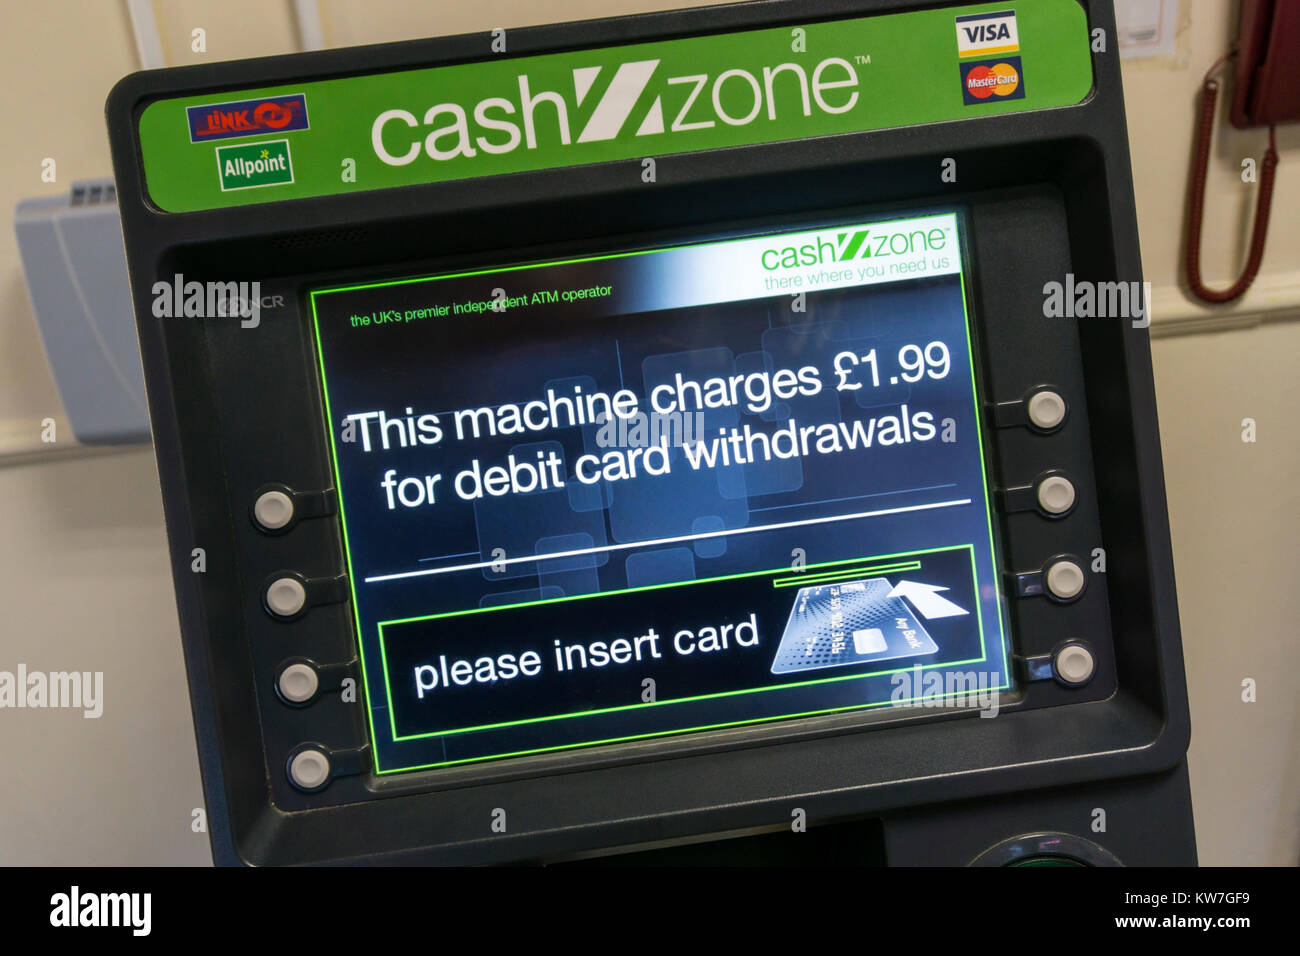 Un CashZone ATM dans une station d'autoroute avertit qu'il y a une charge de 1,99 € pour les retraits par carte de débit. Banque D'Images